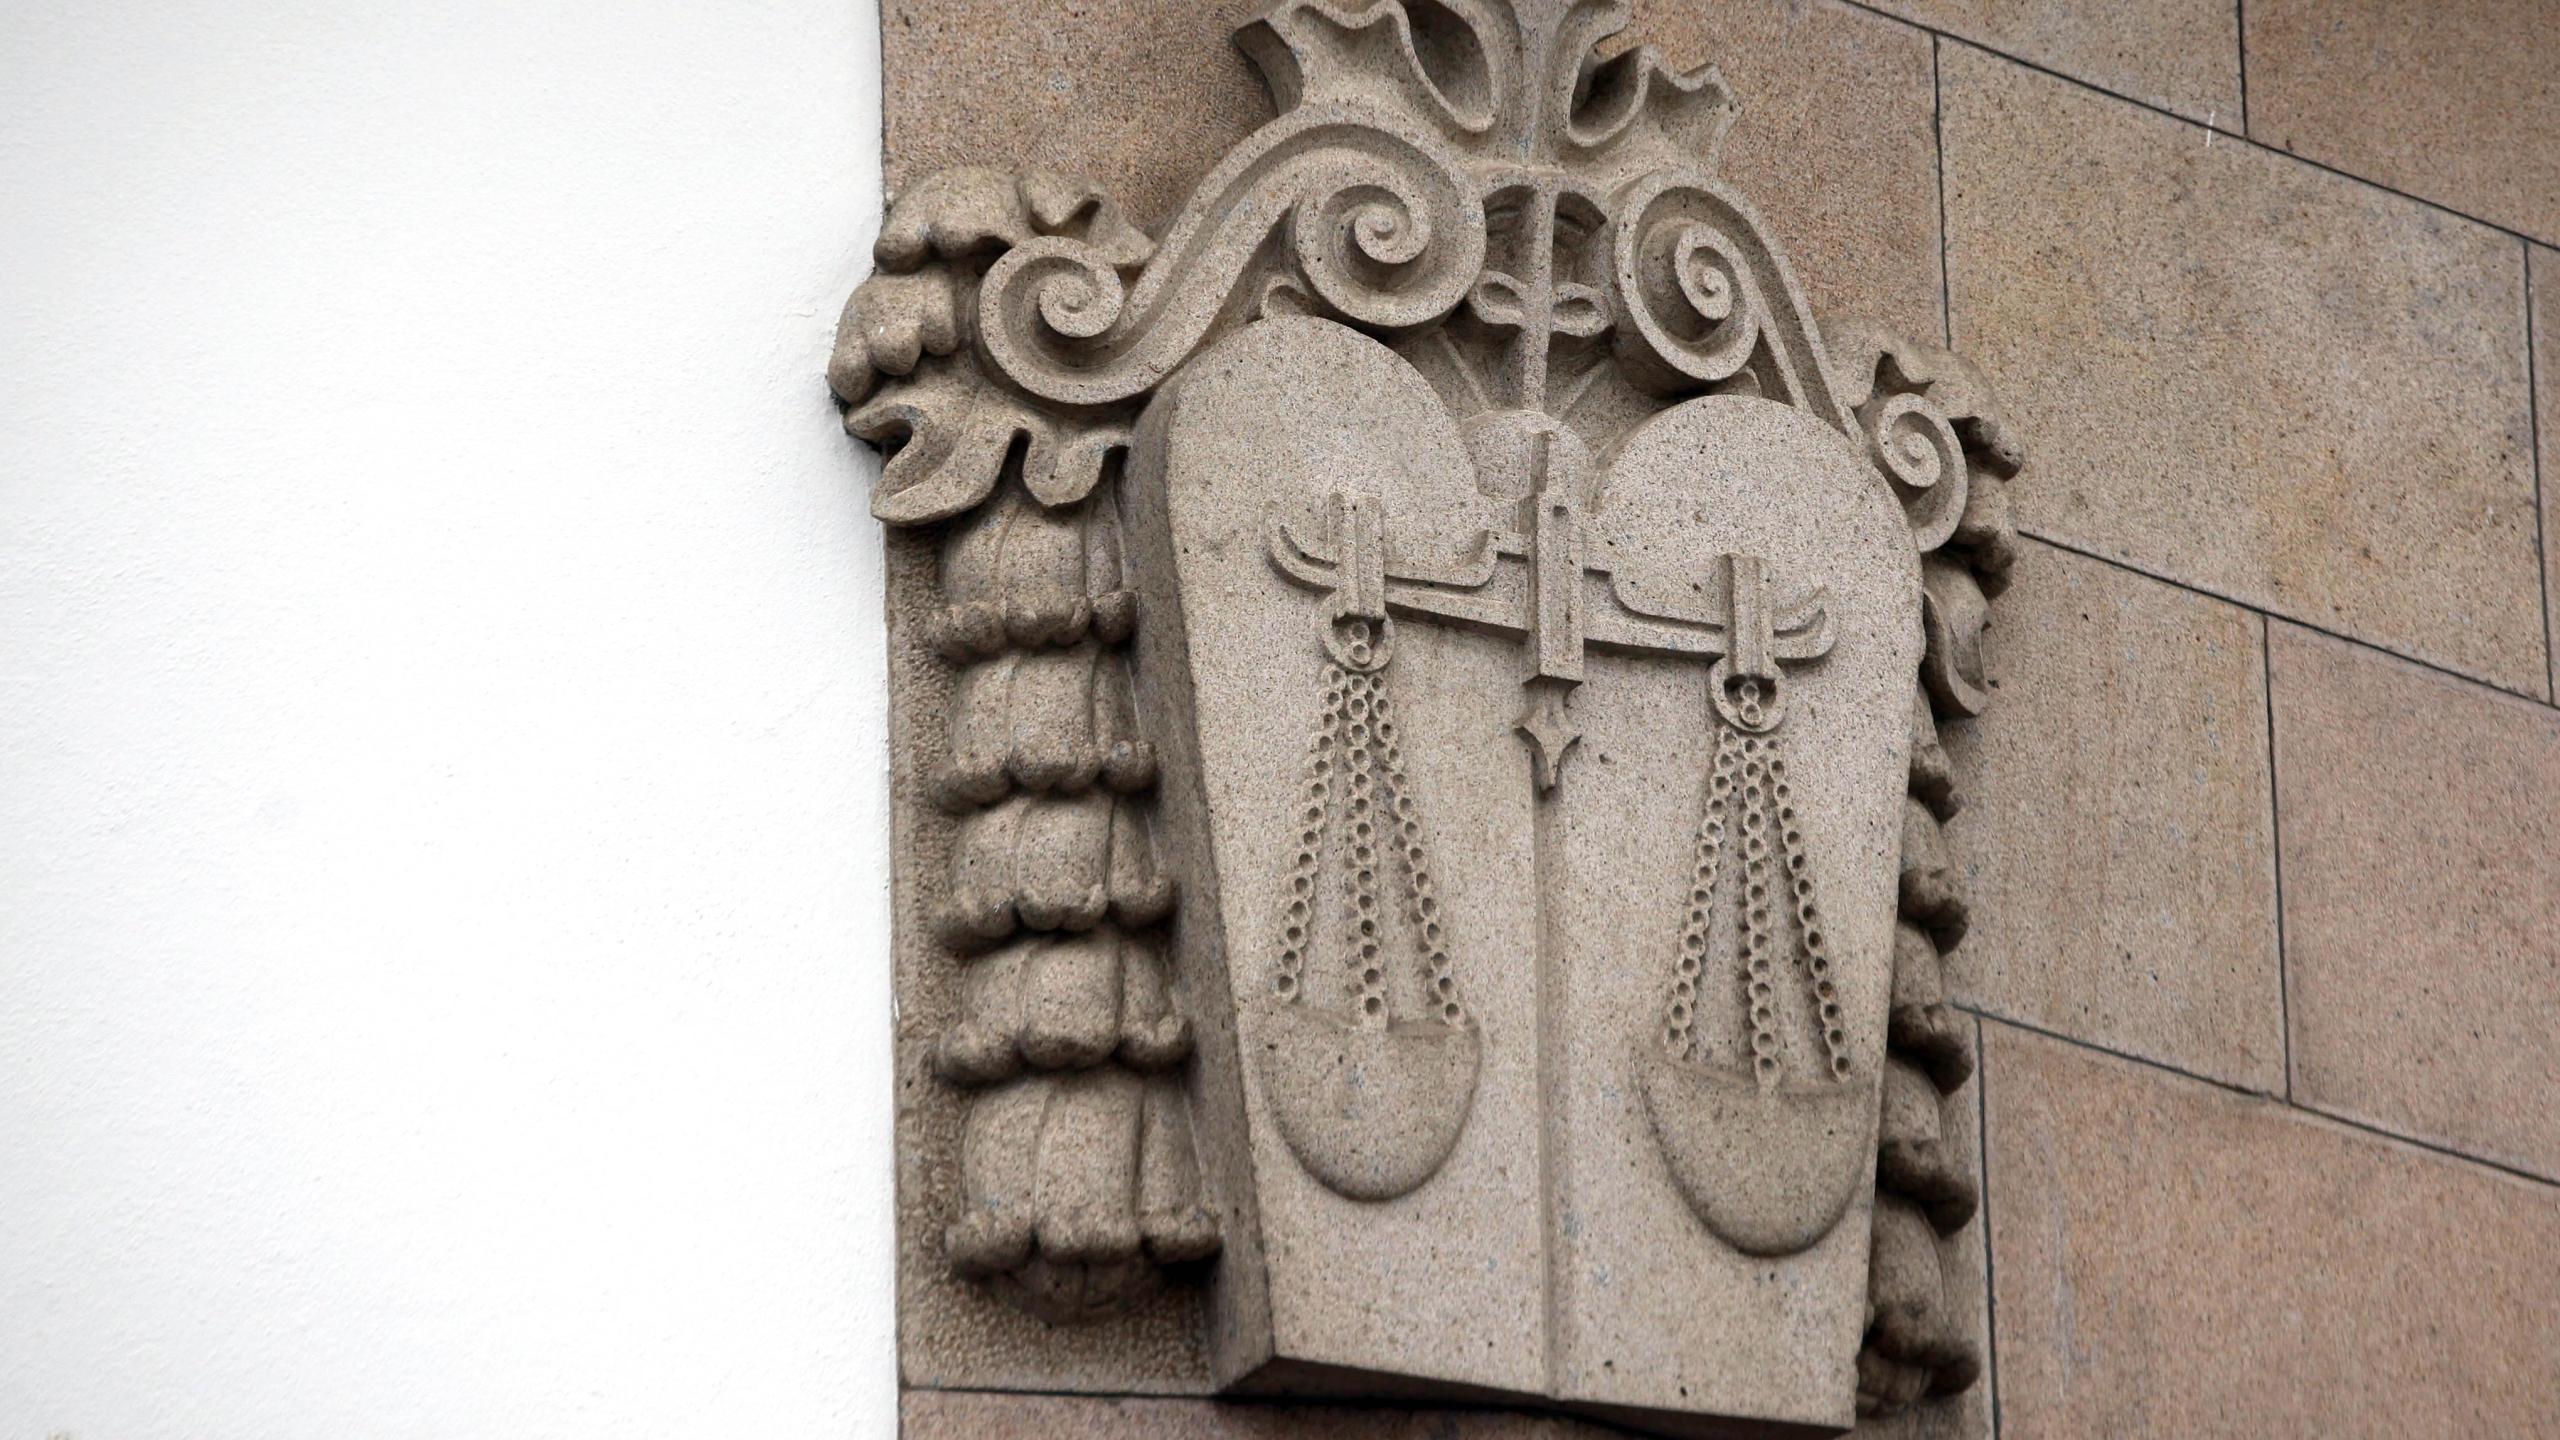 Tribunal julga ação de indemnização pela morte de três estudantes em Braga em 2014